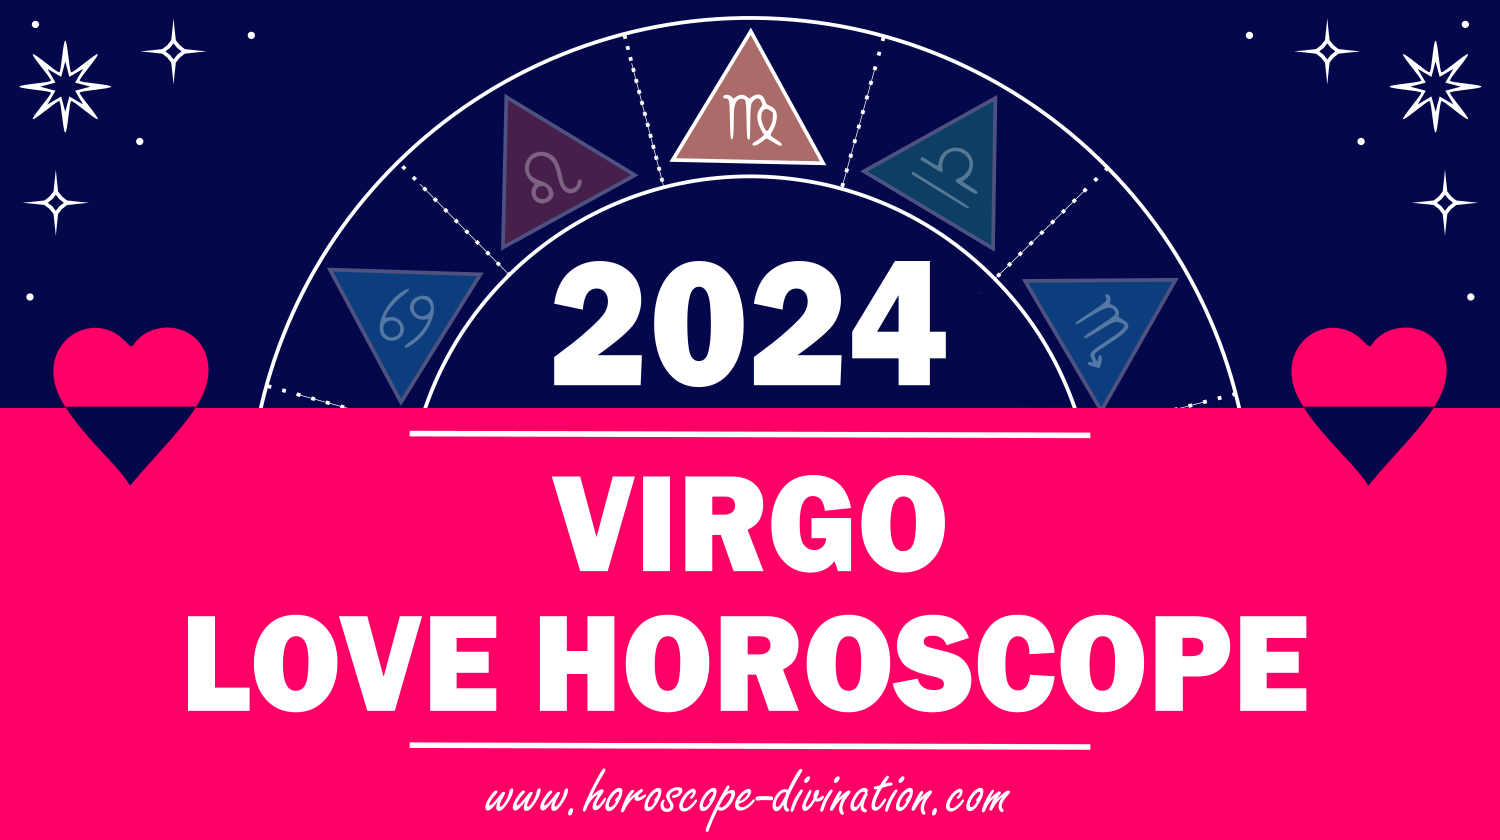 Virgo Love Horoscope 2024 Love & Relationships prediction horoscope